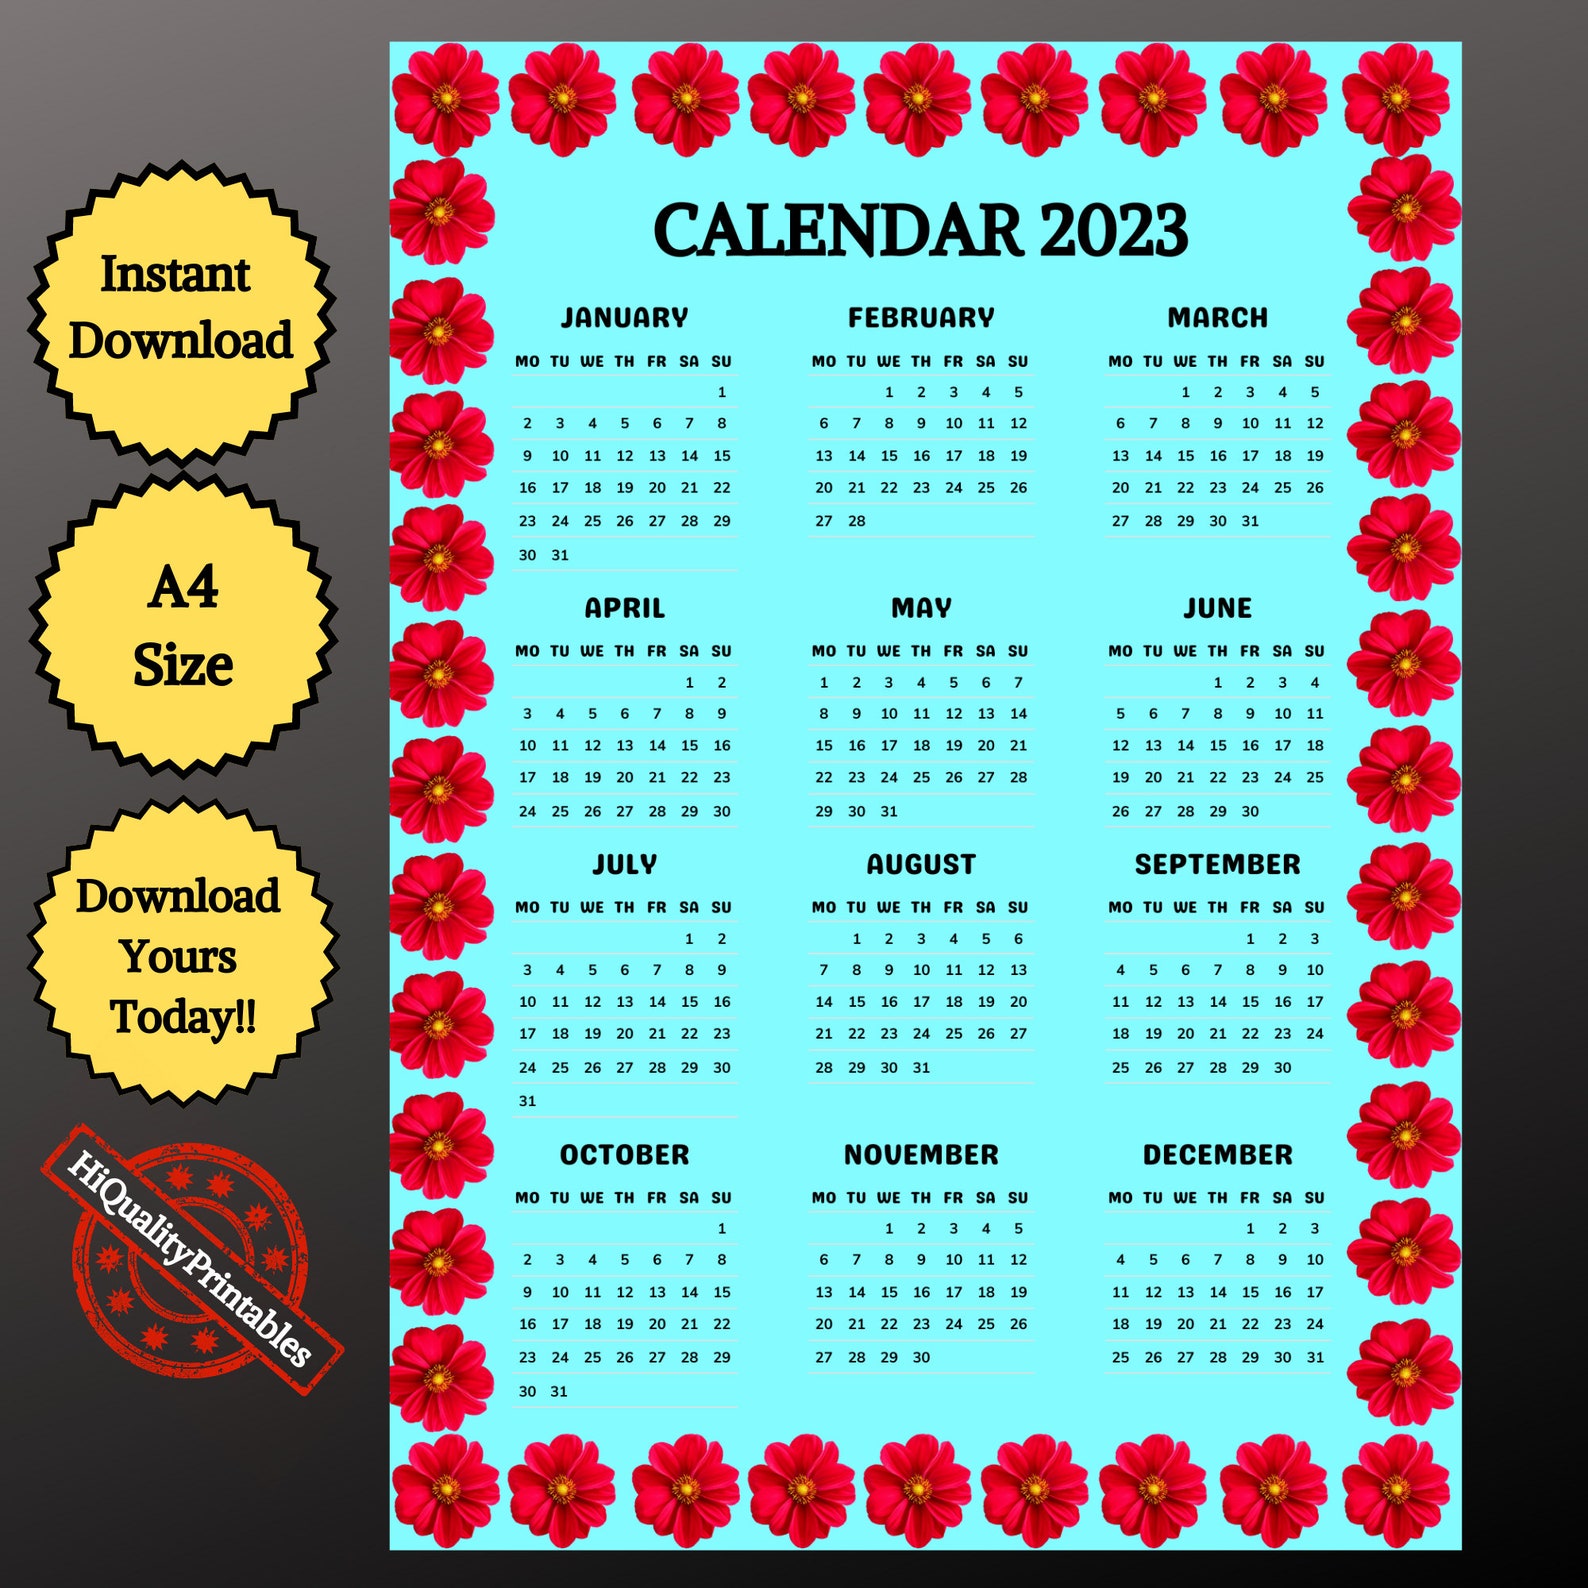 2023-printable-calendara4-size-wall-calendar-2023-2023-etsy